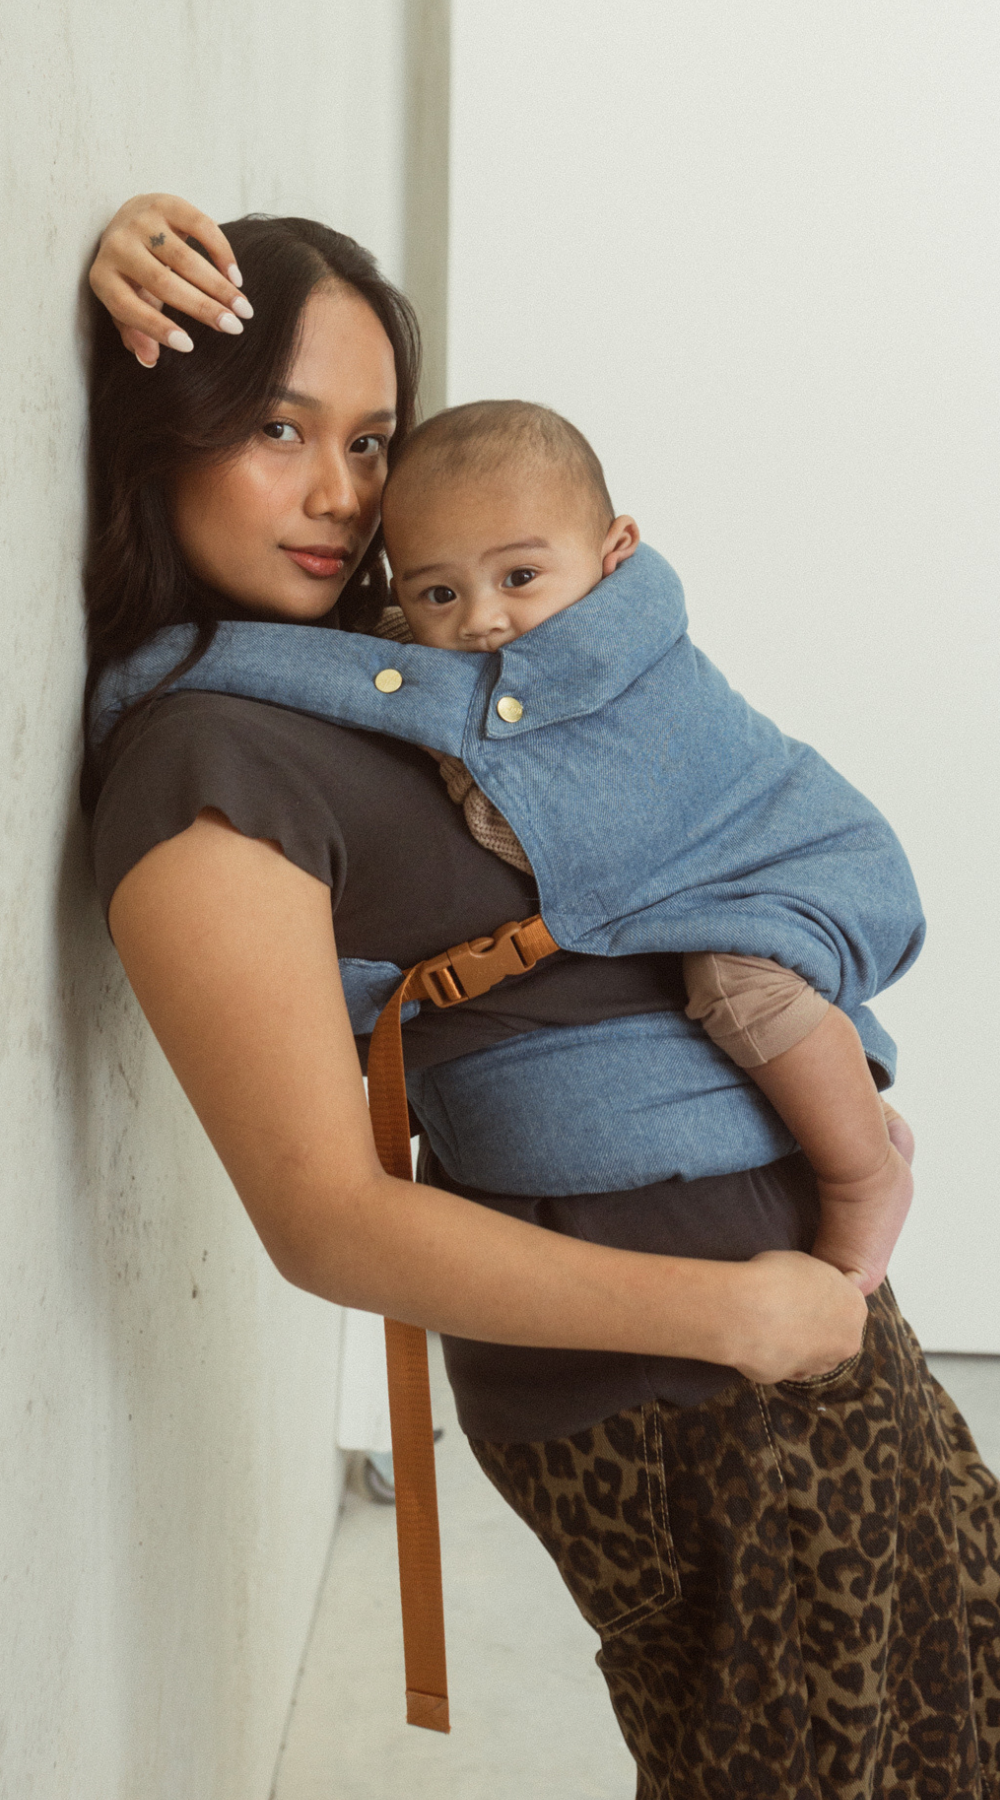 Chekoh denim clip baby carrier wear from newborn to toddler. Australian designed, 100% Cotton.